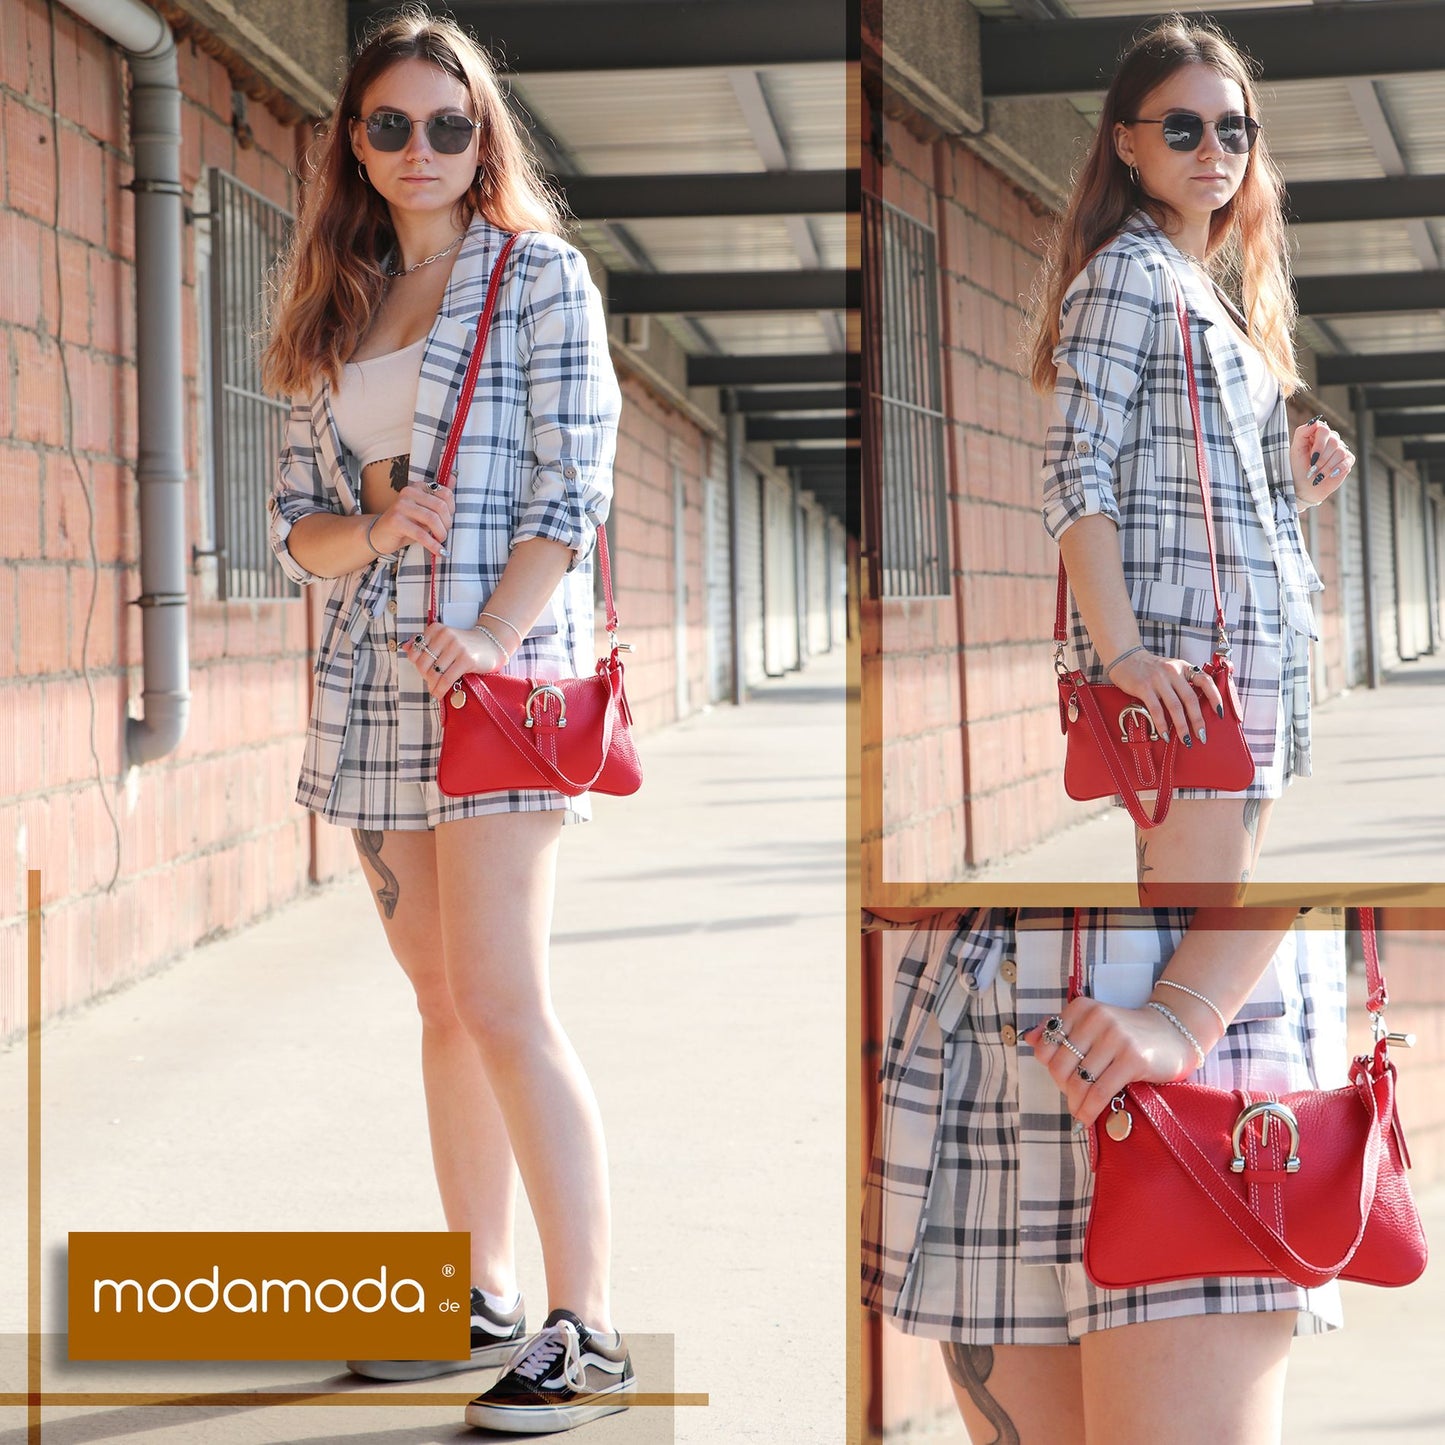 modamoda de - T05 -  ital Citytasche Umhängetasche Klein aus Leder